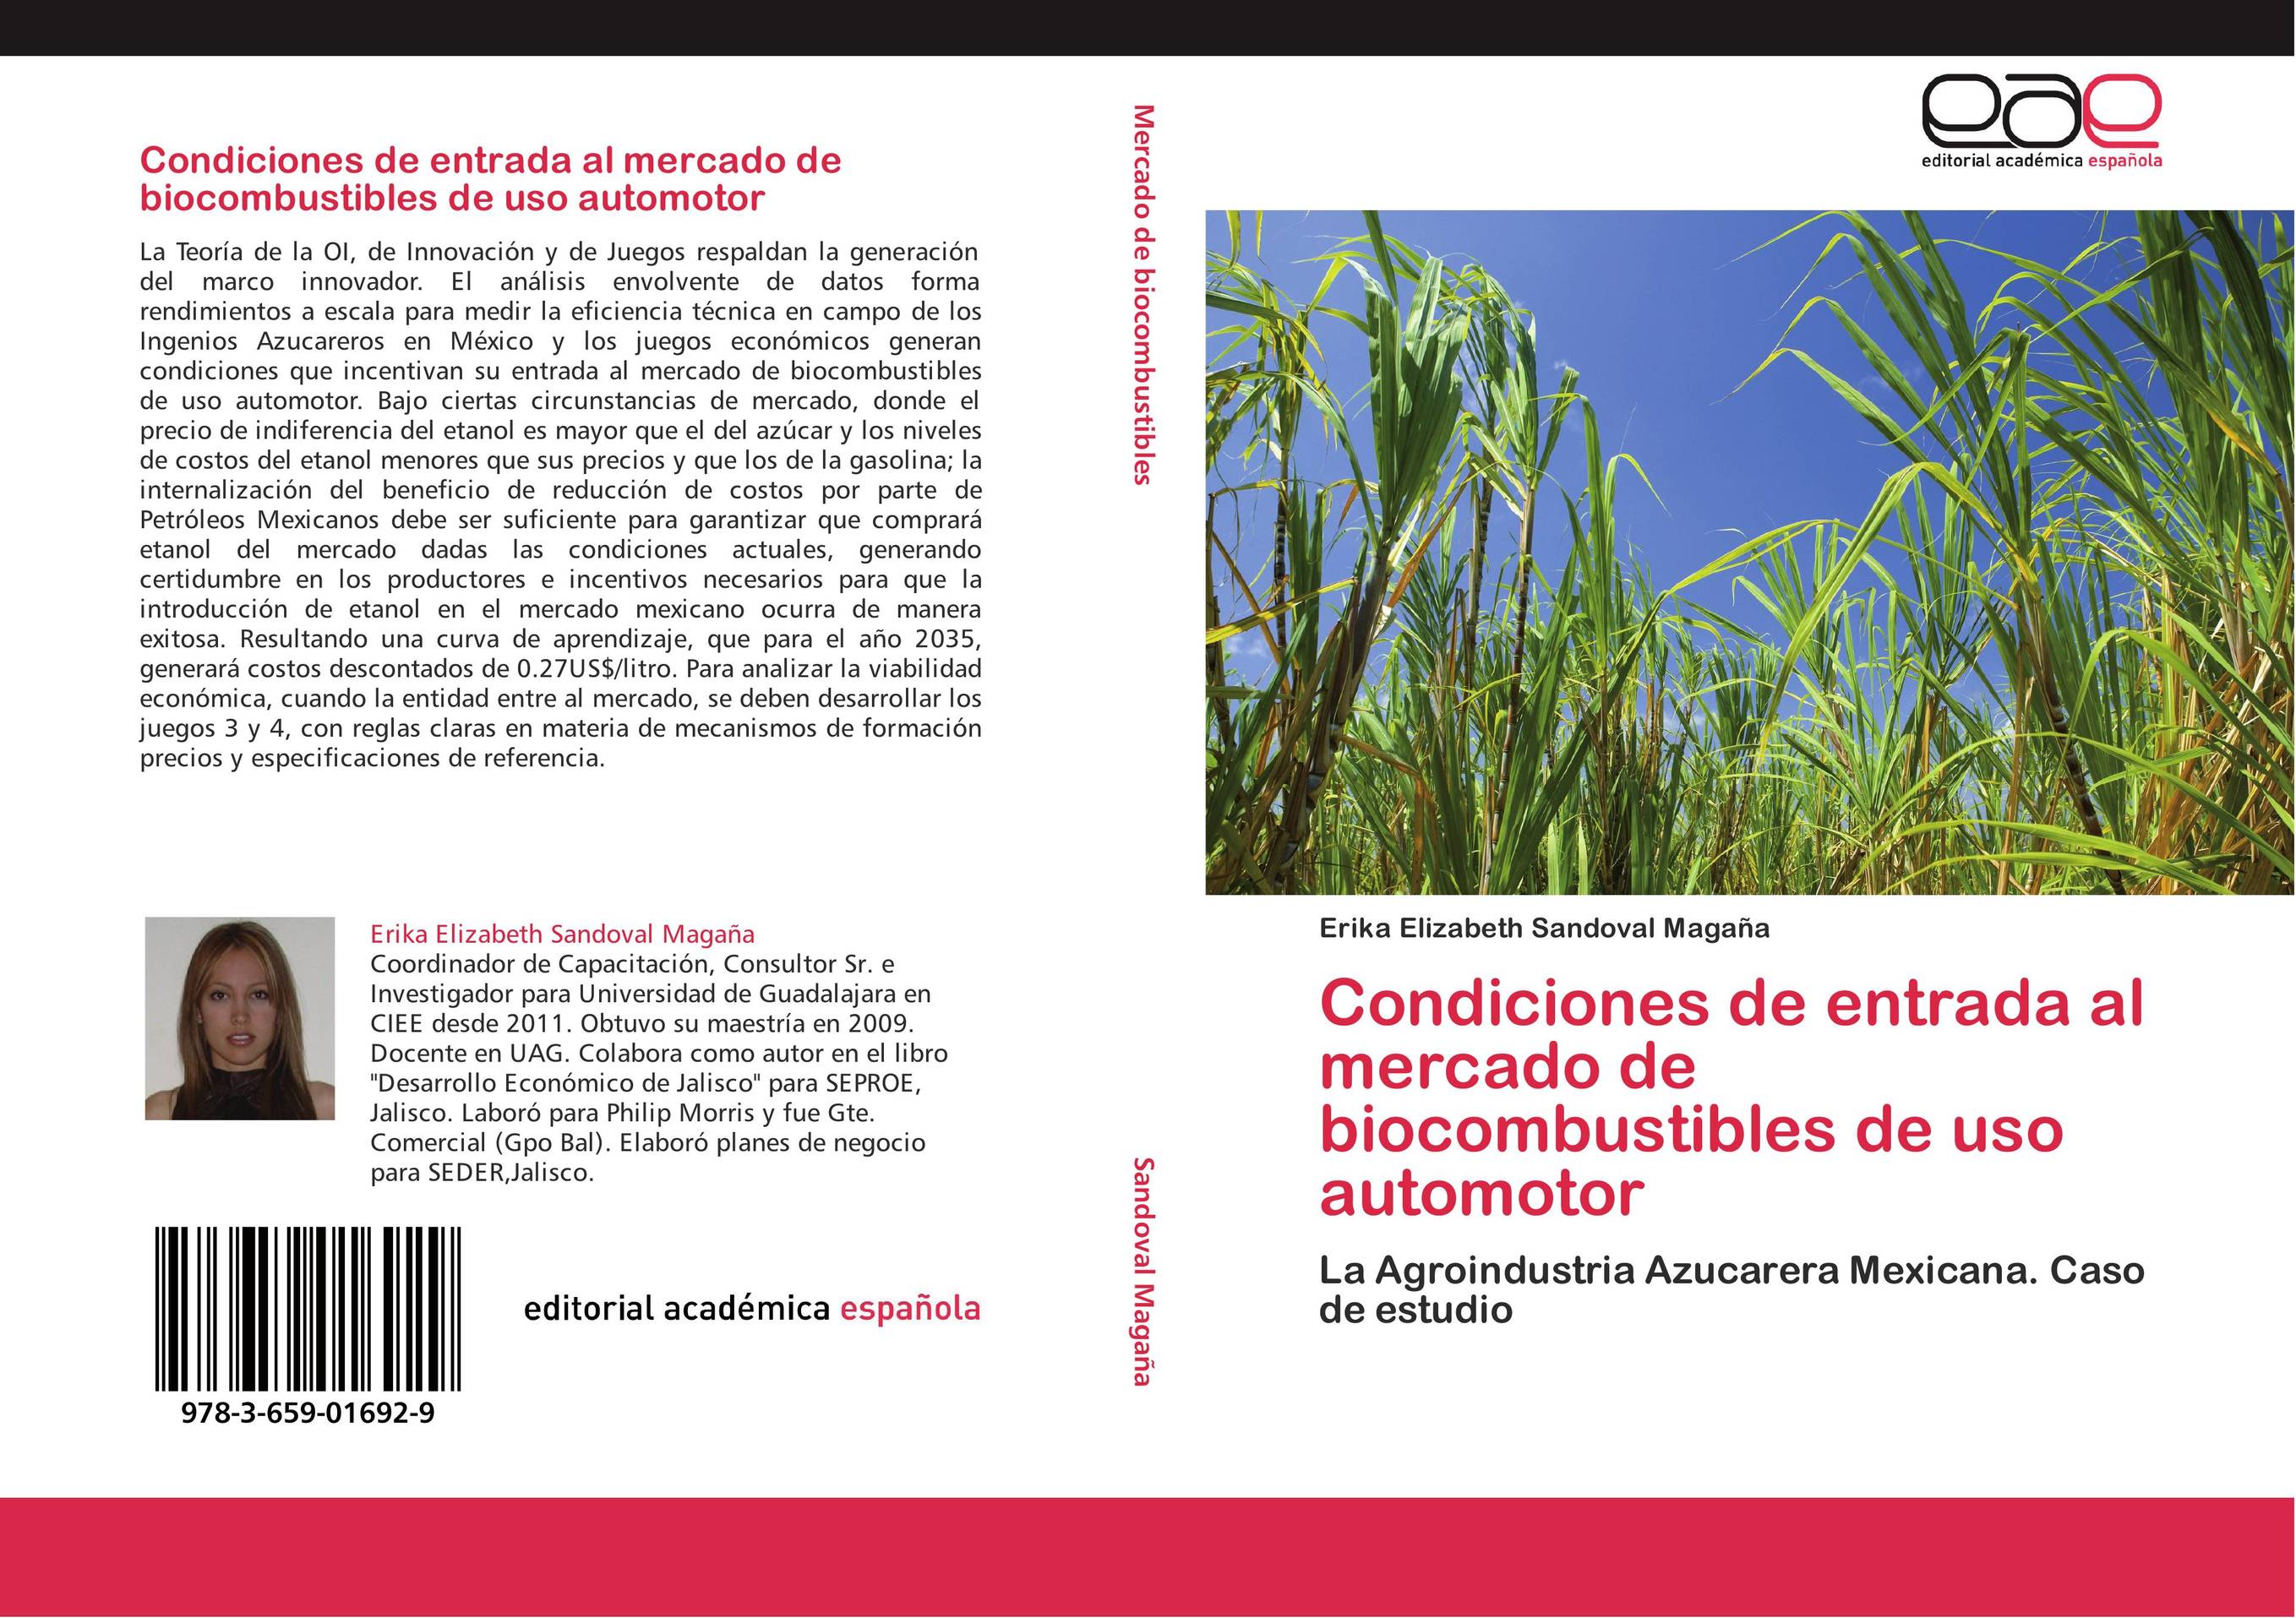 Condiciones de entrada al mercado de biocombustibles de uso automotor